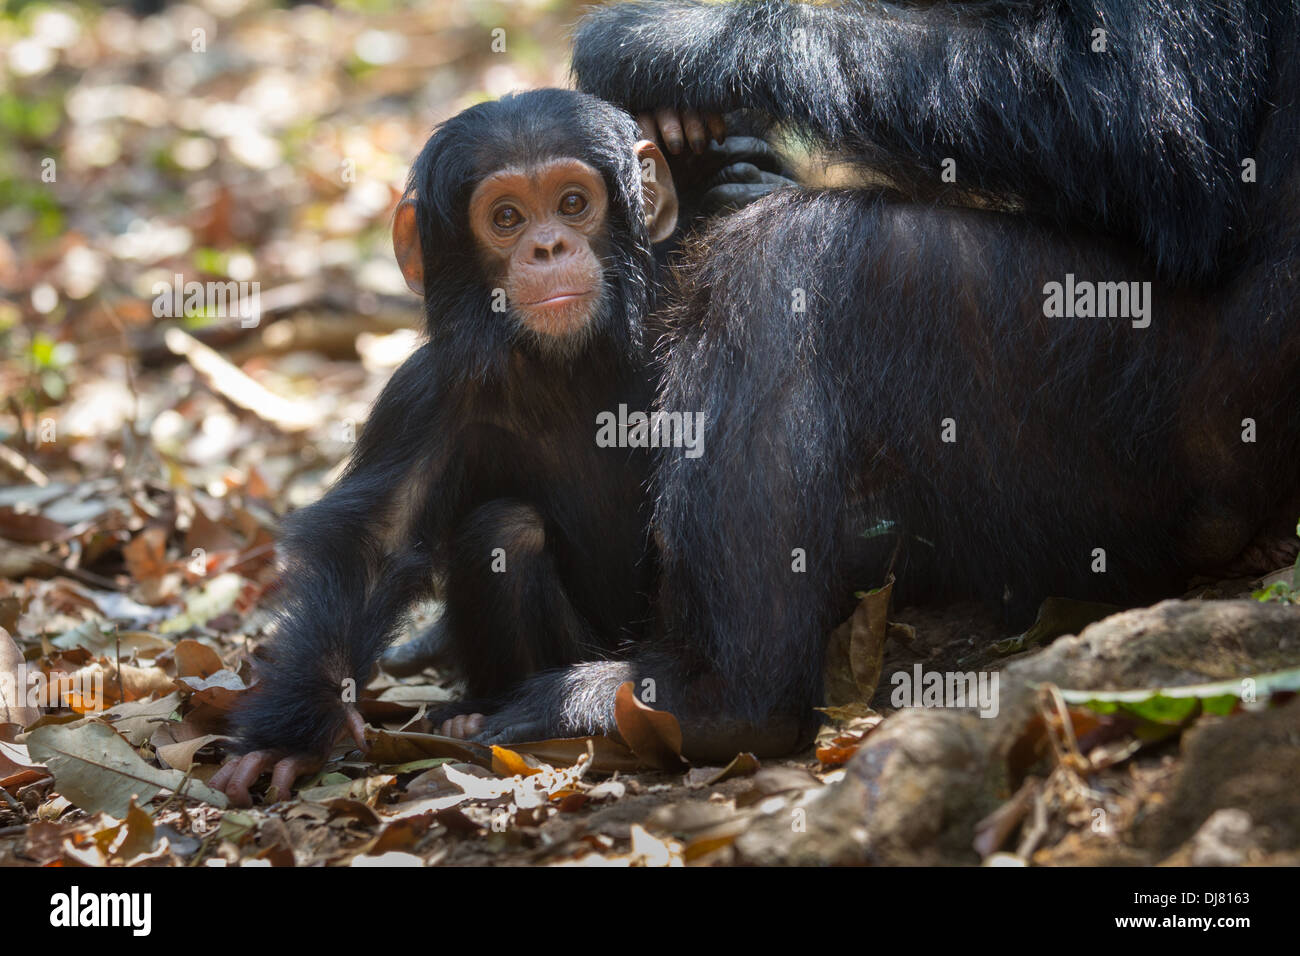 Infant chimp at Gombe Stream National Park, Tanzania Stock Photo